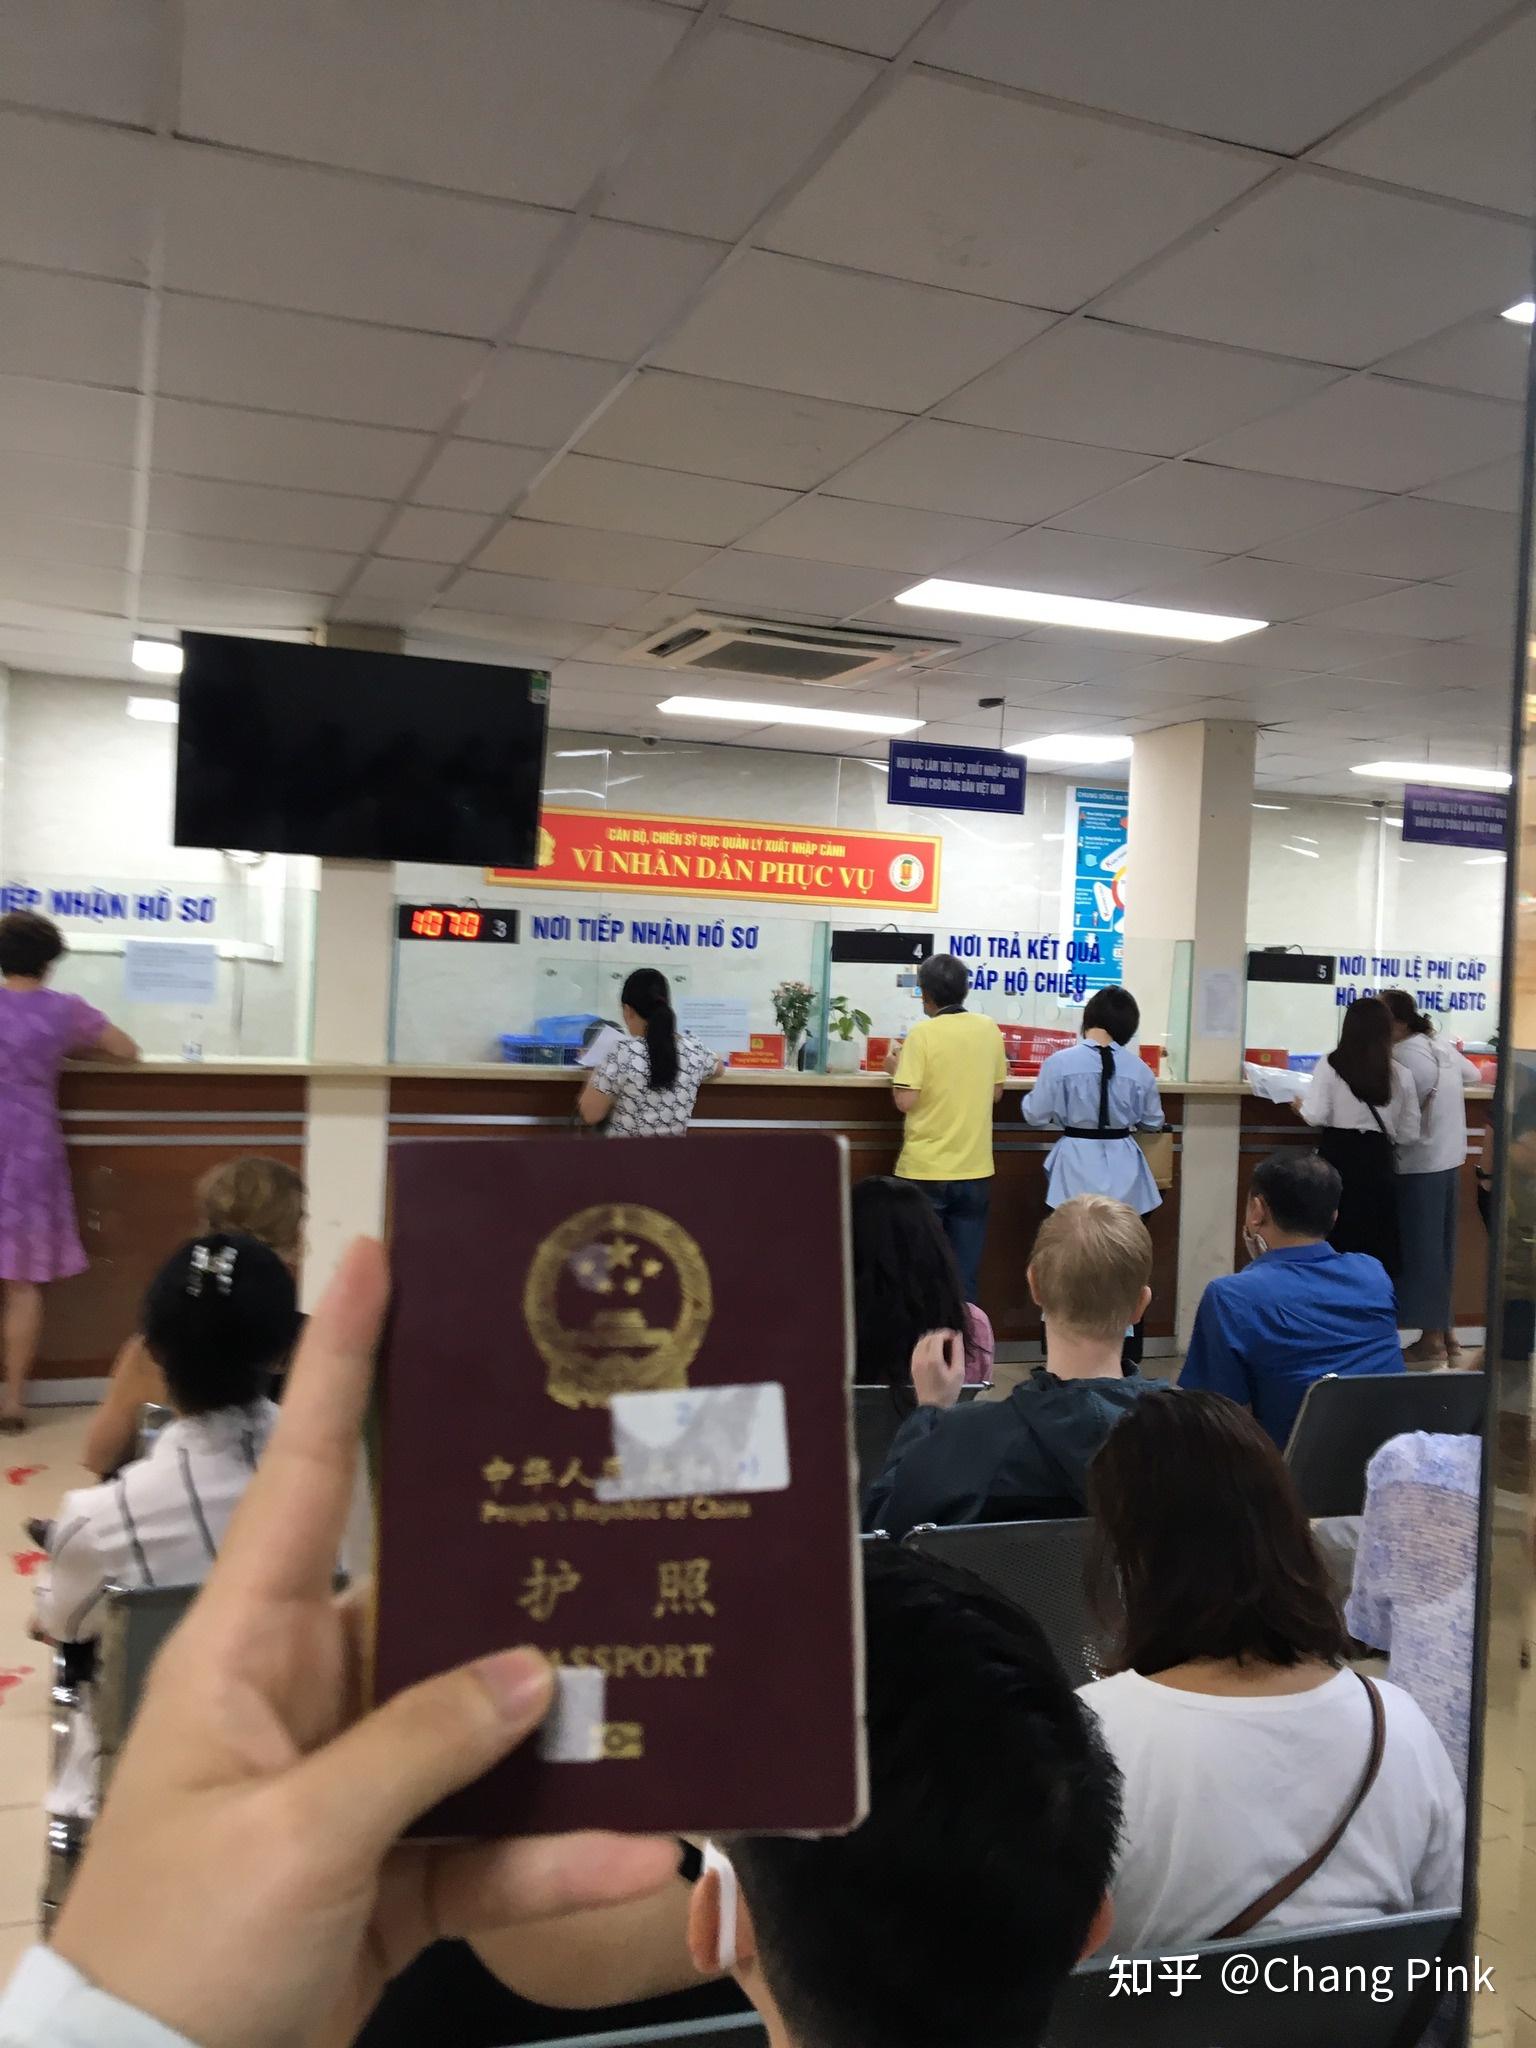 2023 美国公民申请越南緊急签证最快的方式 - 越南电子签证 - 越南落地签证 2023